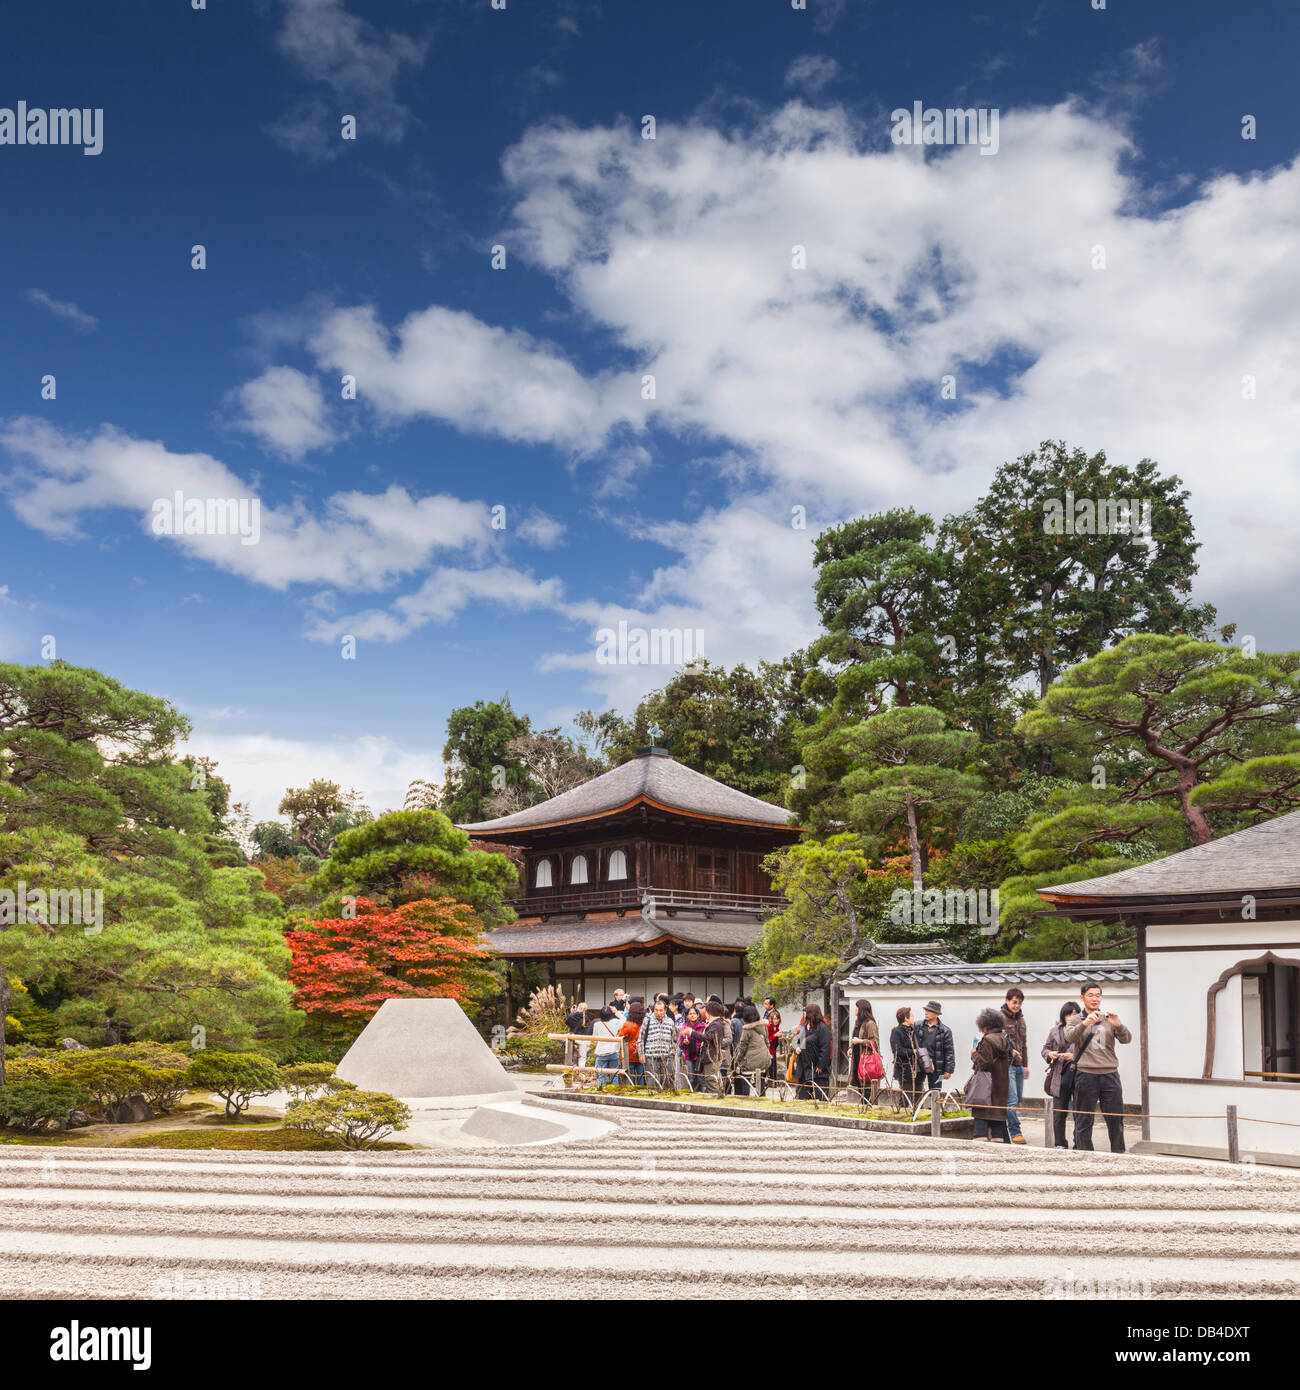 Le pavillon de l'argent du temple de Ginkaku-ji ou Jisho-ji à Kyoto, vu à l'automne. Ce temple bouddhiste Zen est un remarquable... Banque D'Images